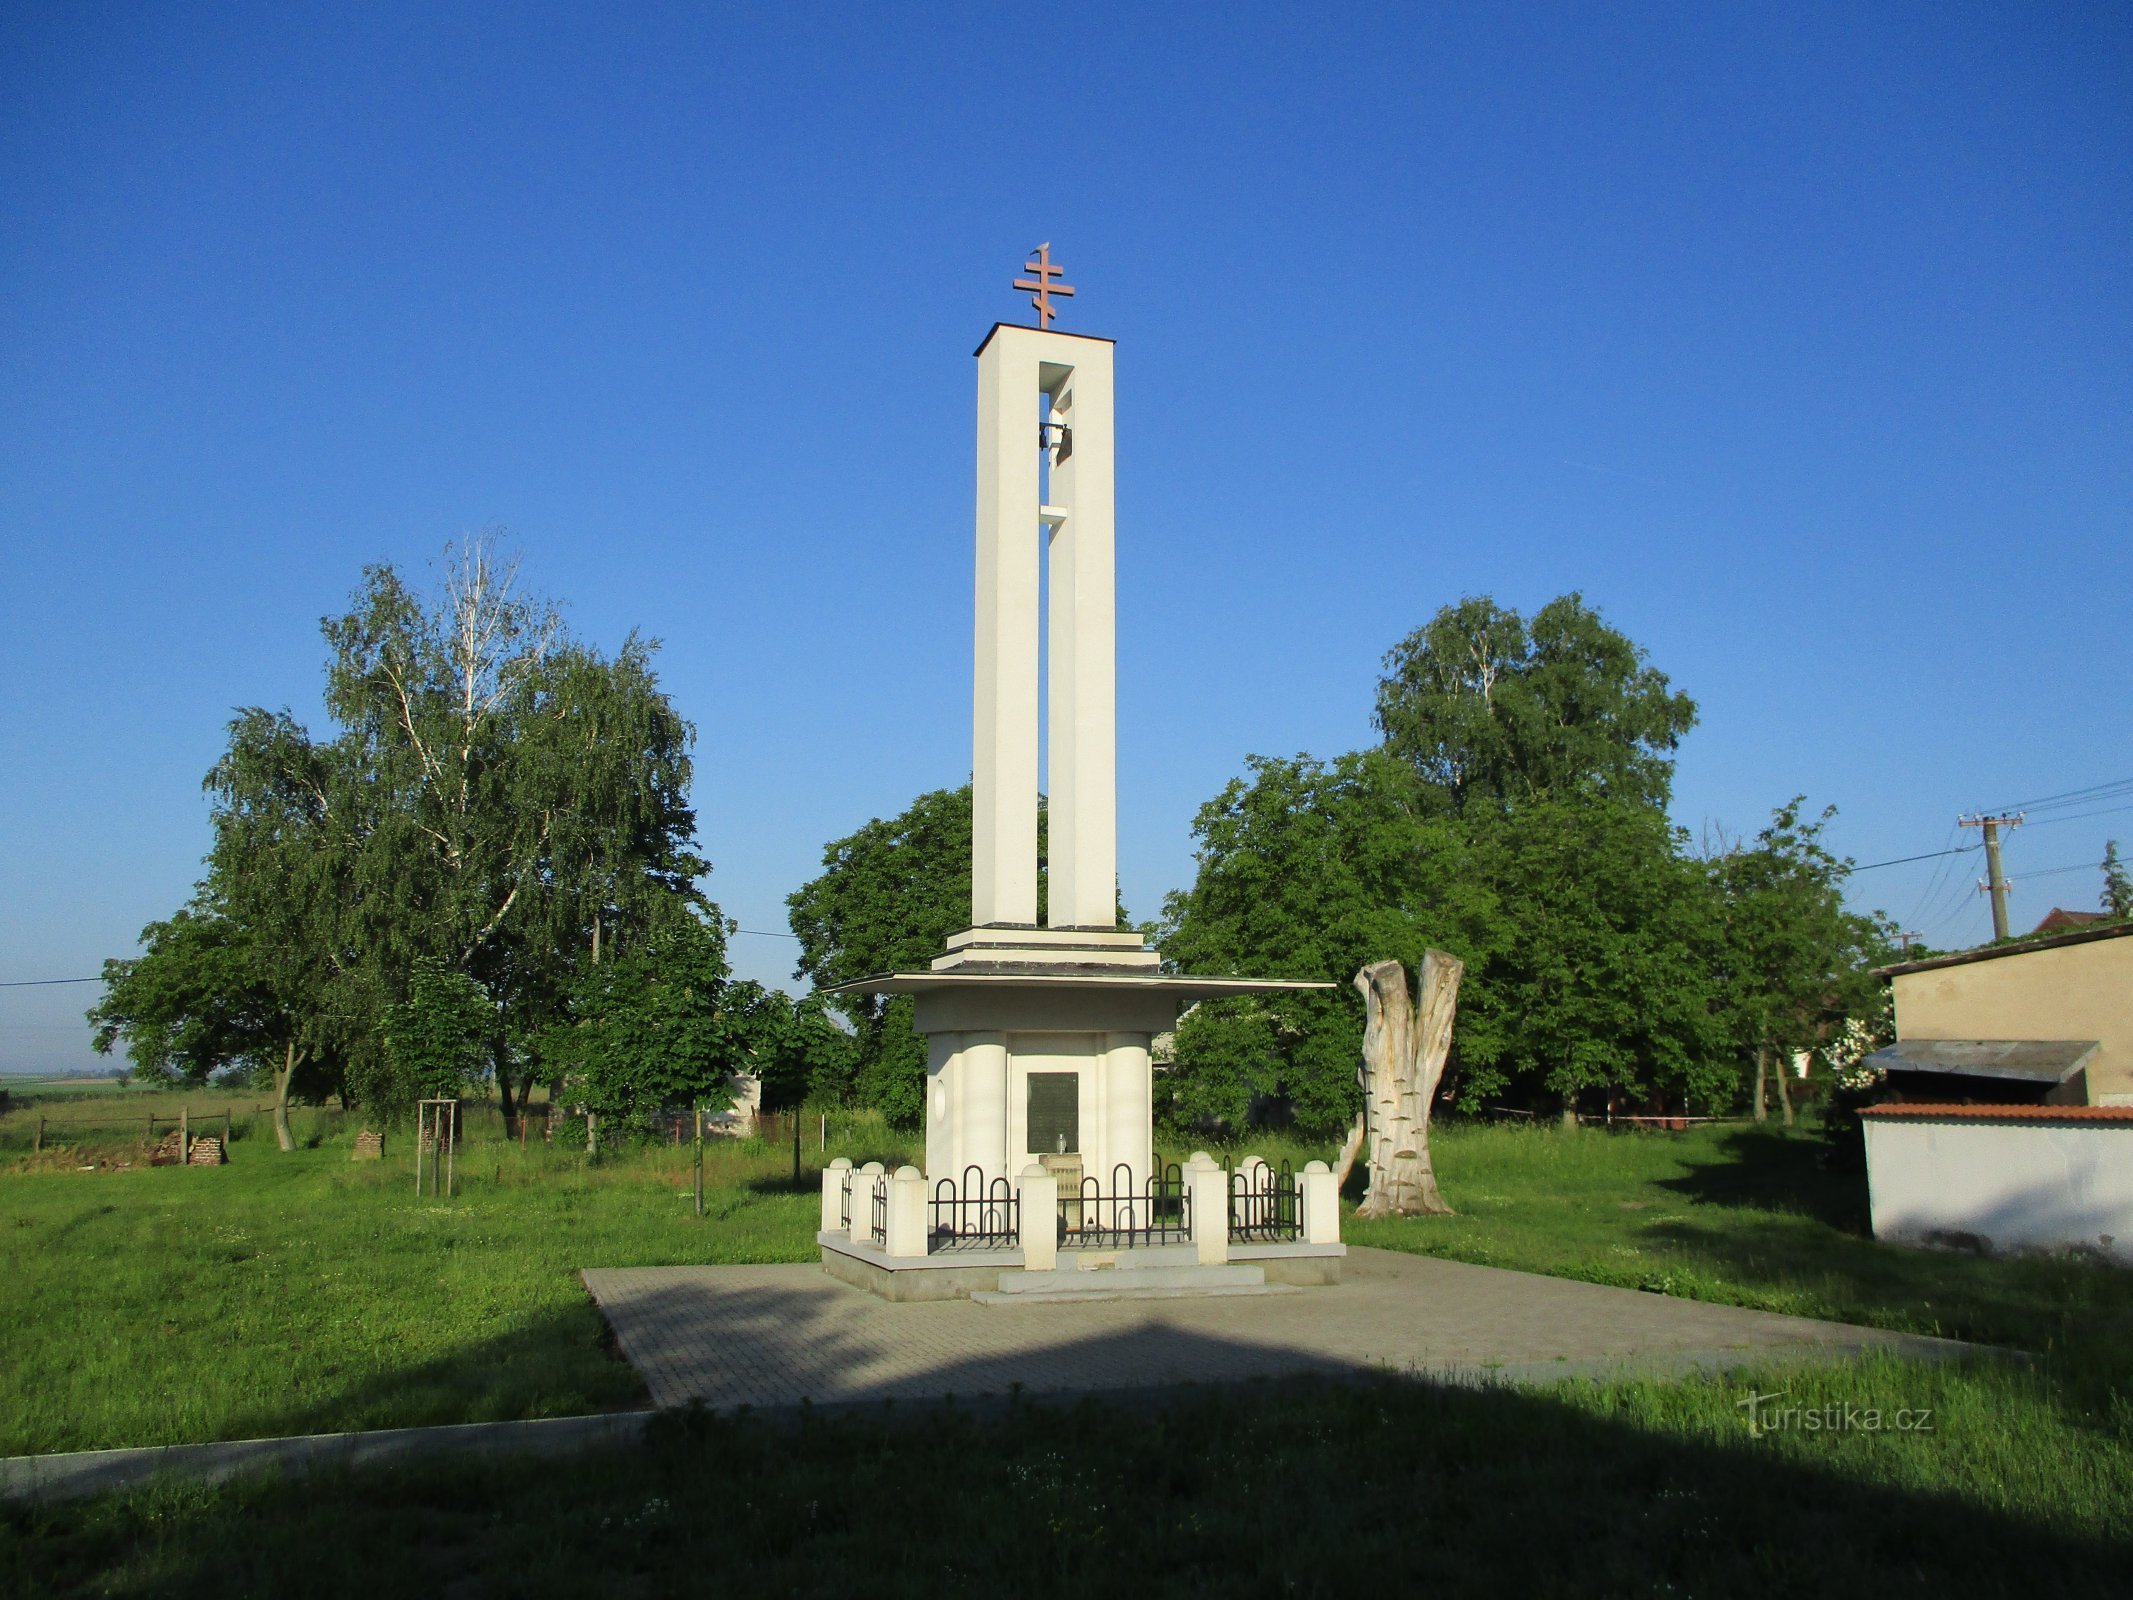 Zvonik čehoslovačke crkve (Praskačka)